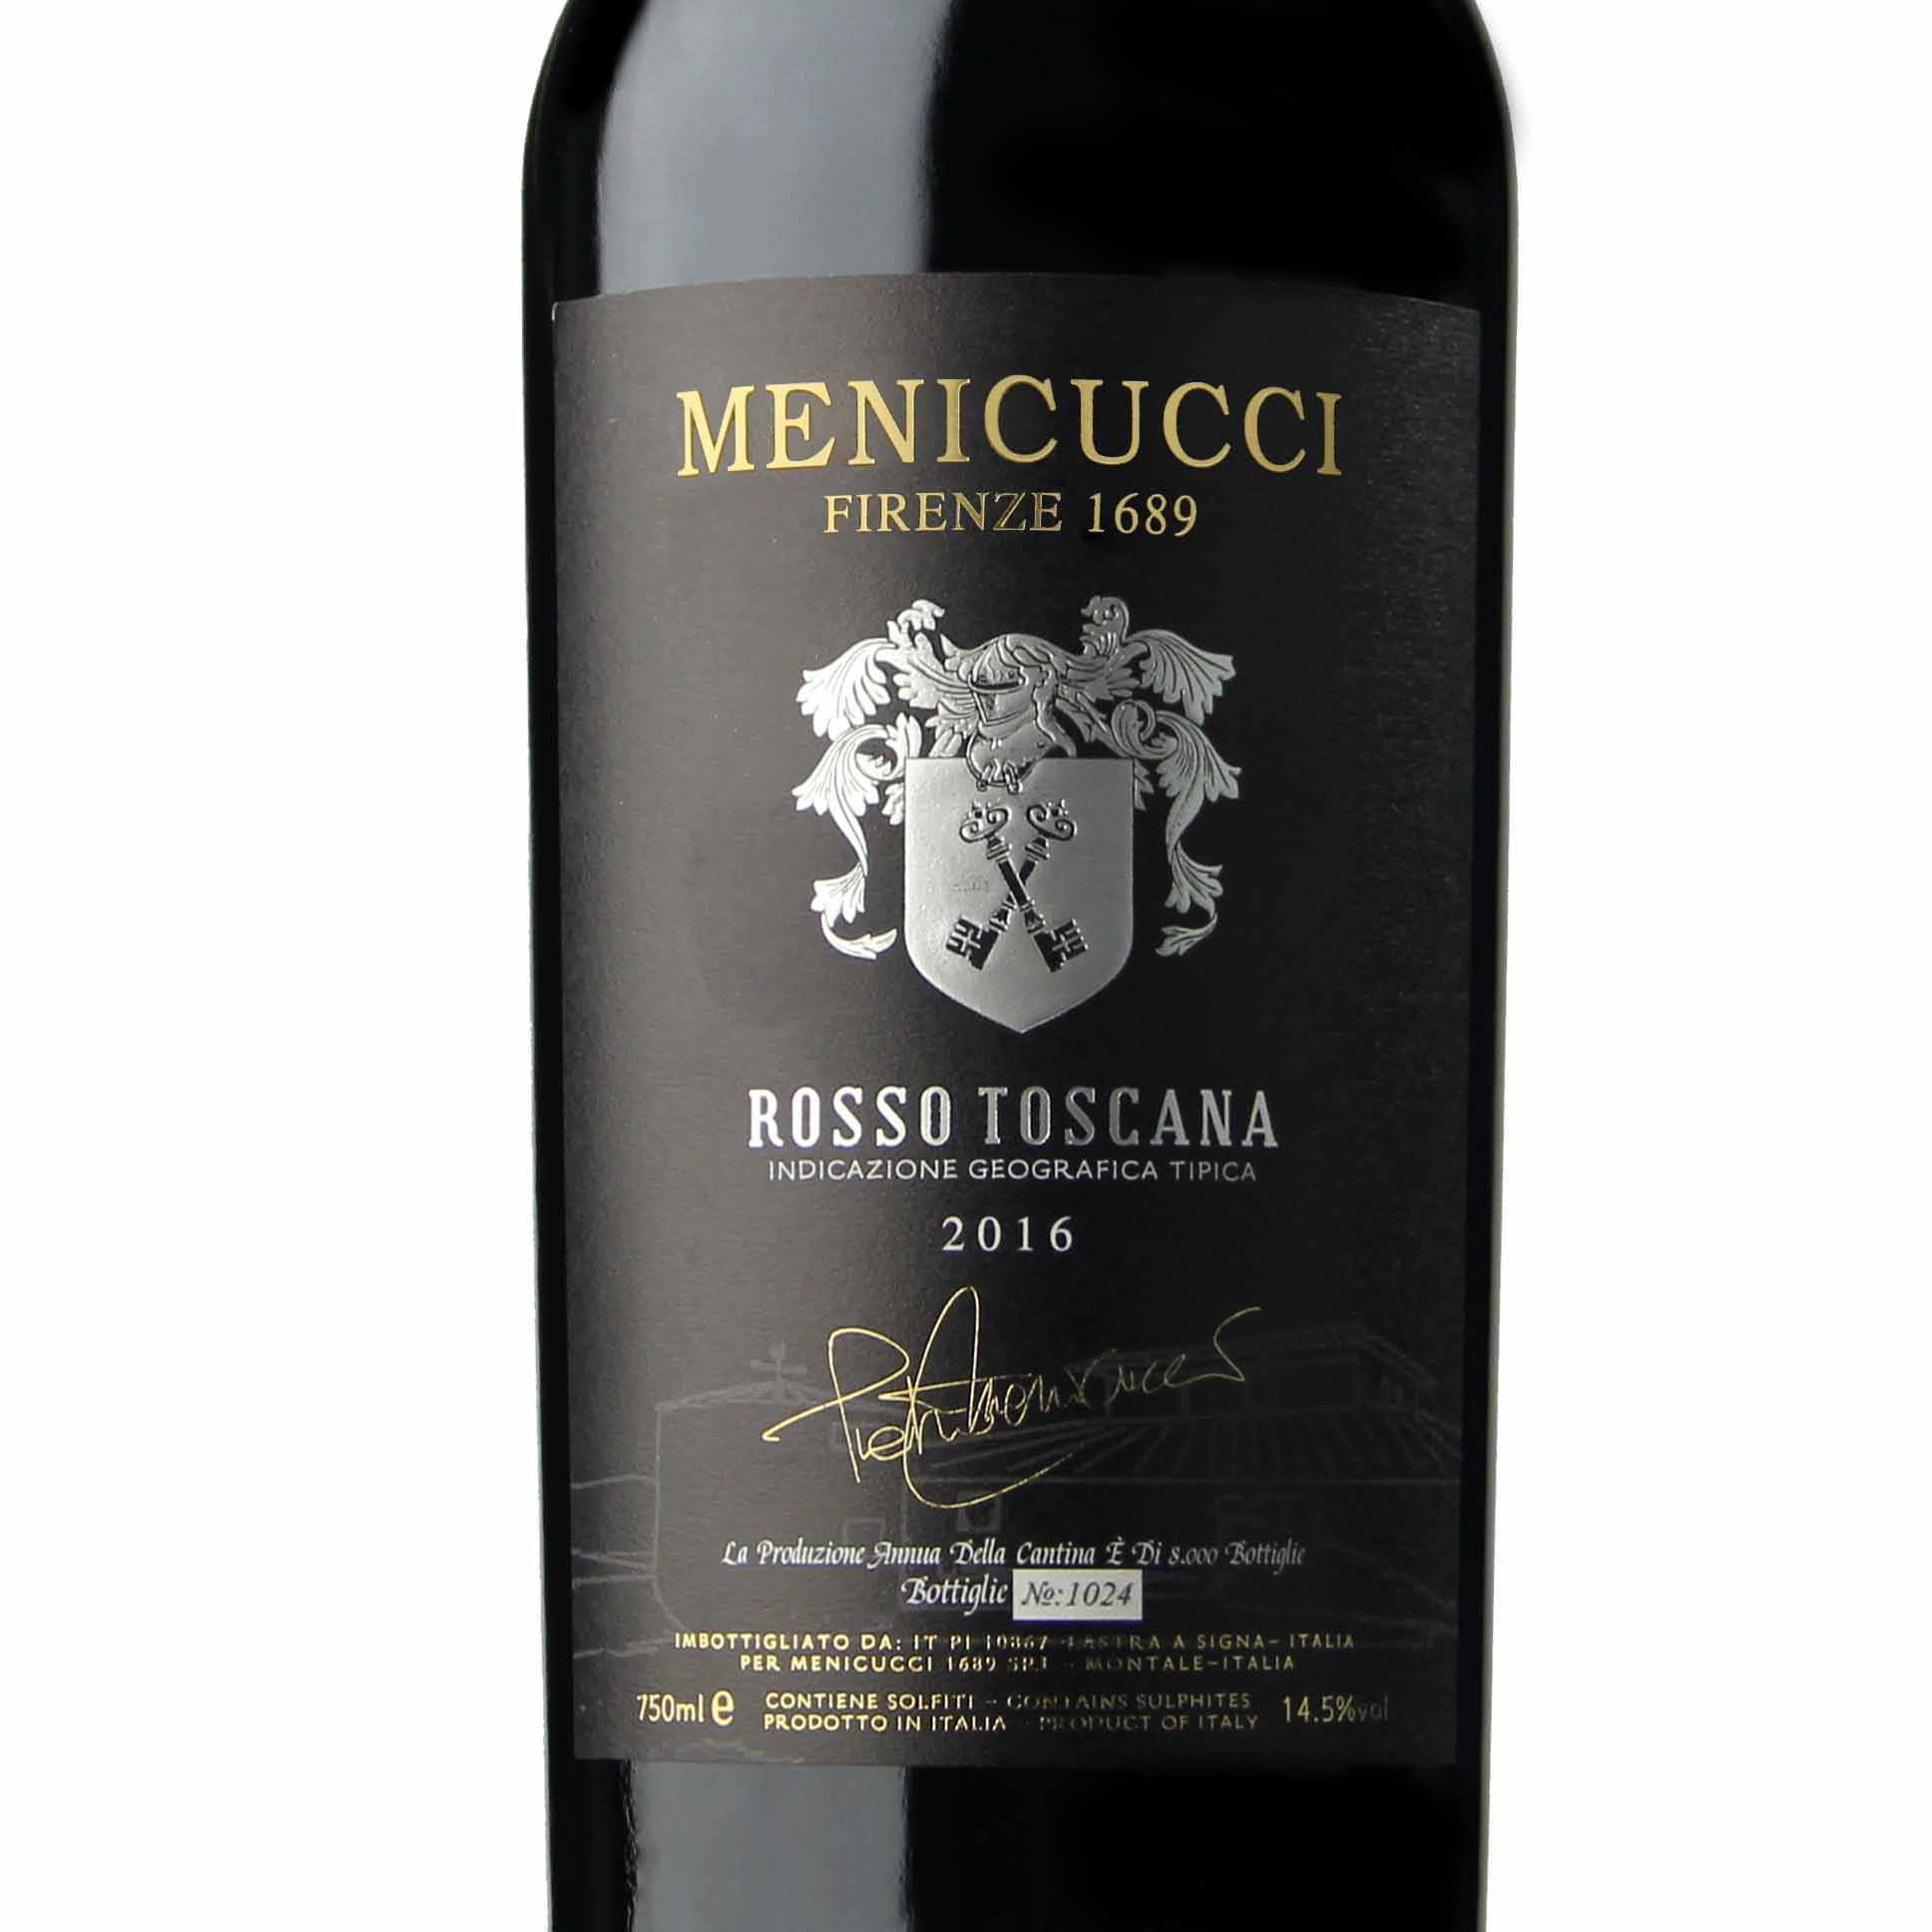 意大利梅尼古奇Menicucci超级托斯卡纳红葡萄酒